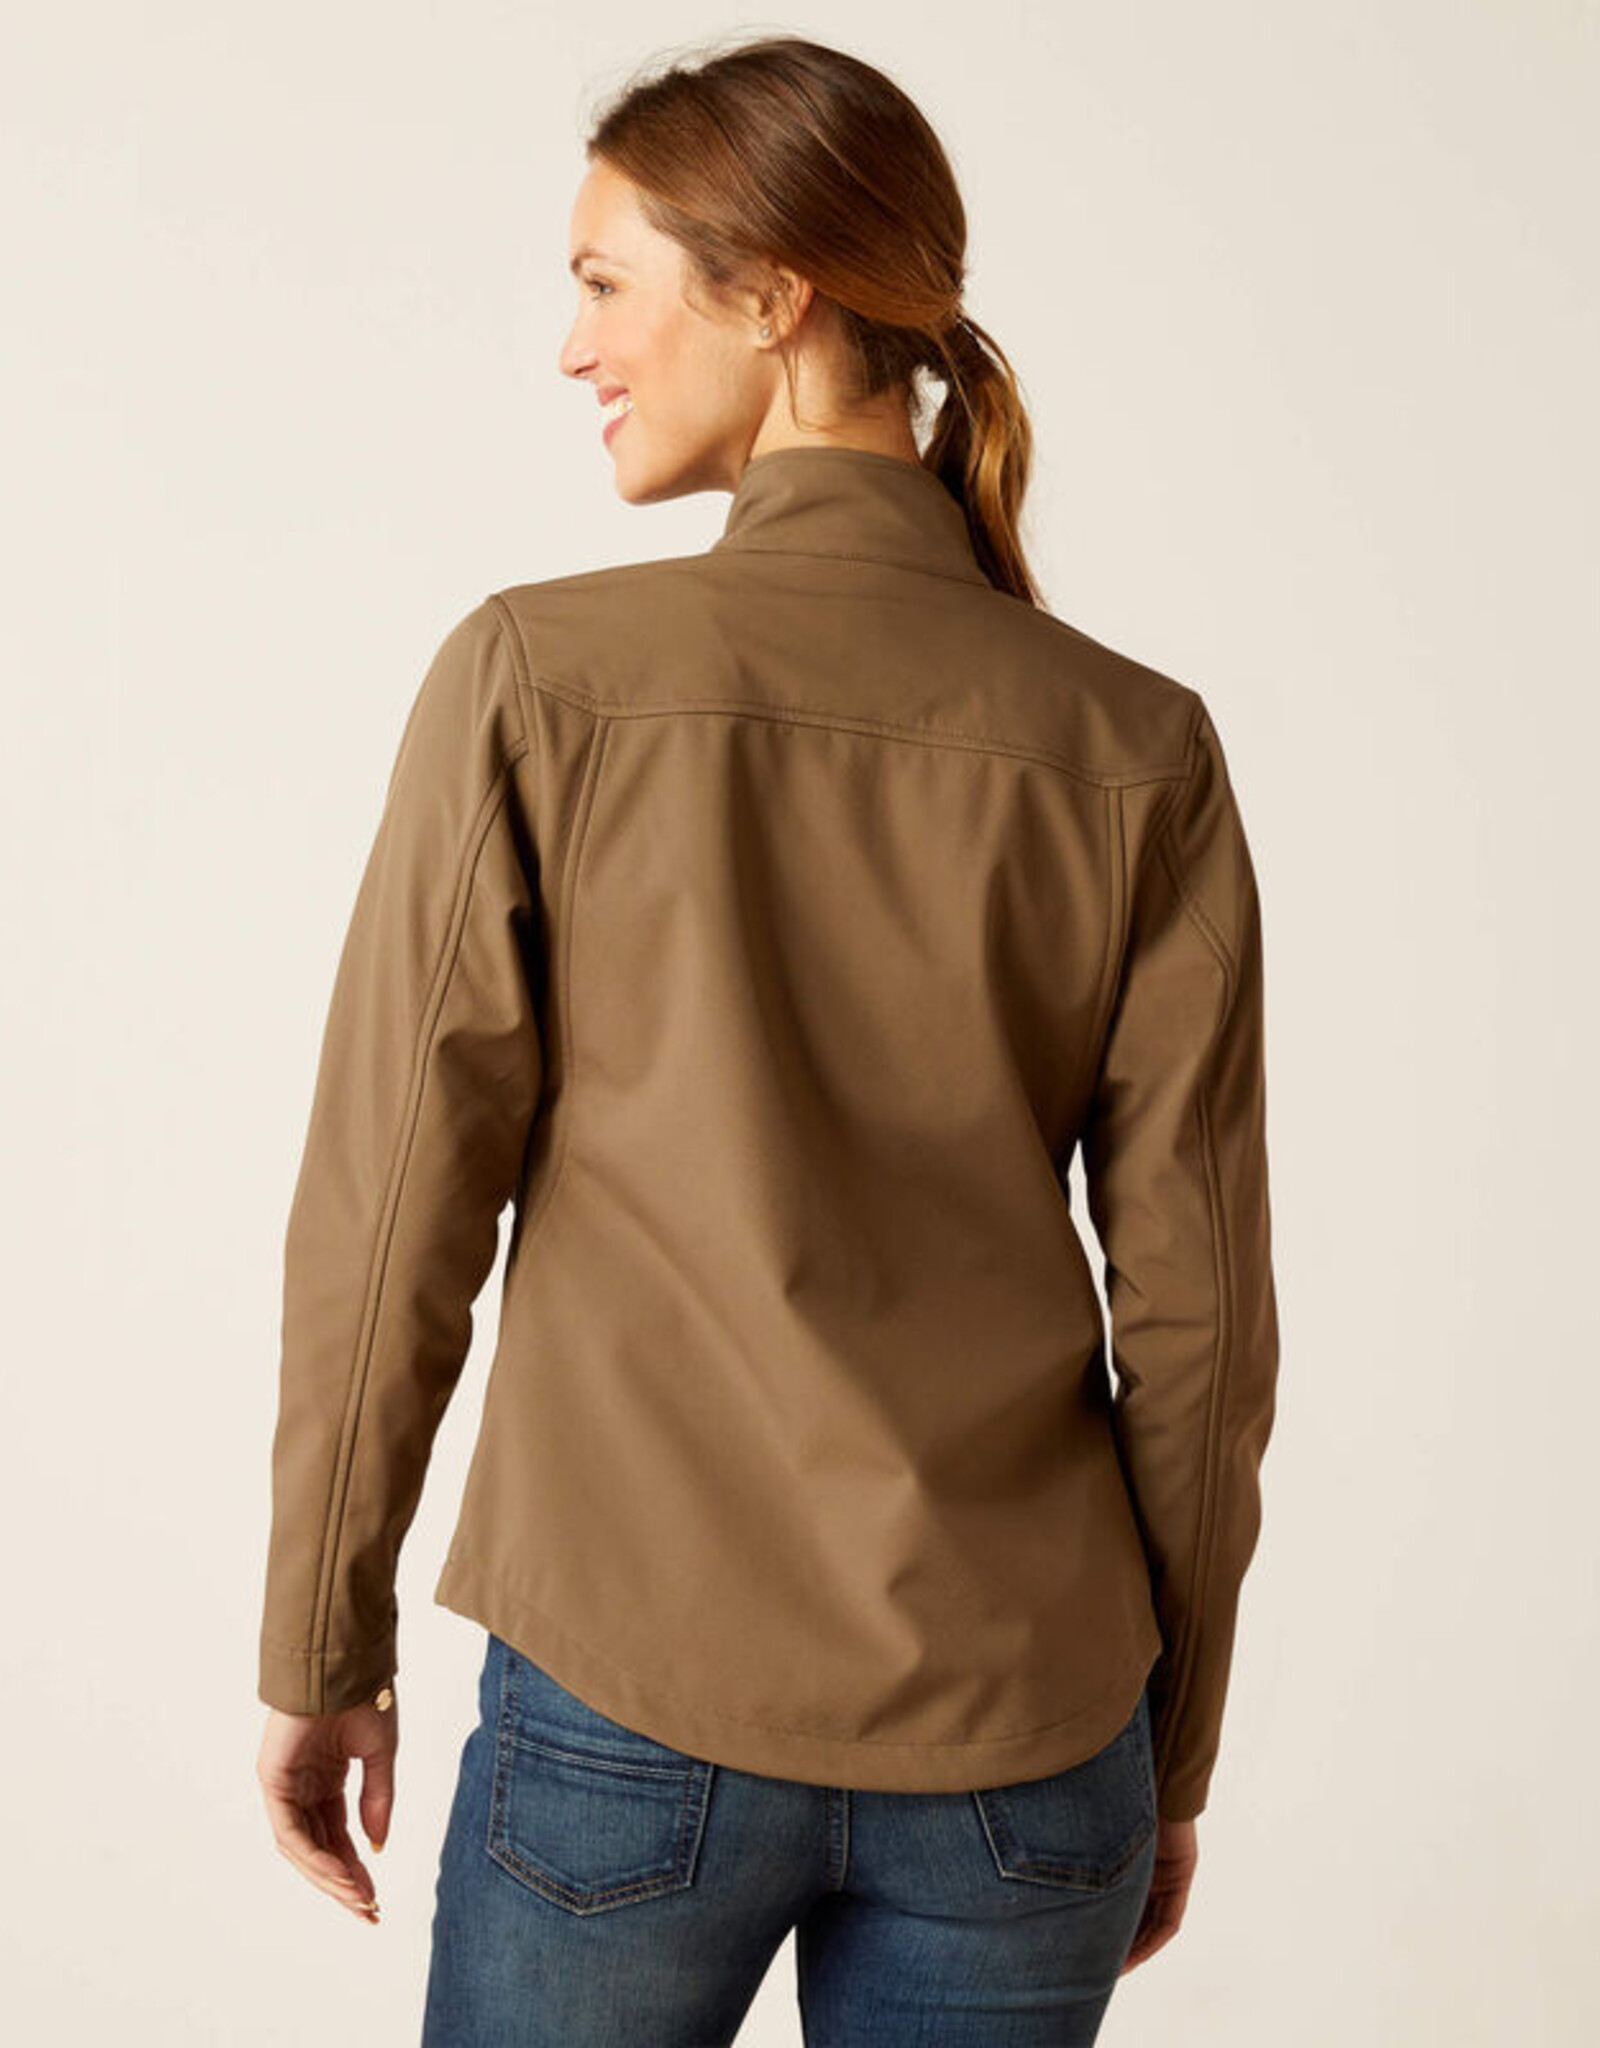 Calabasas Saddlery - Ariat Ladies' Team Softshell Jacket